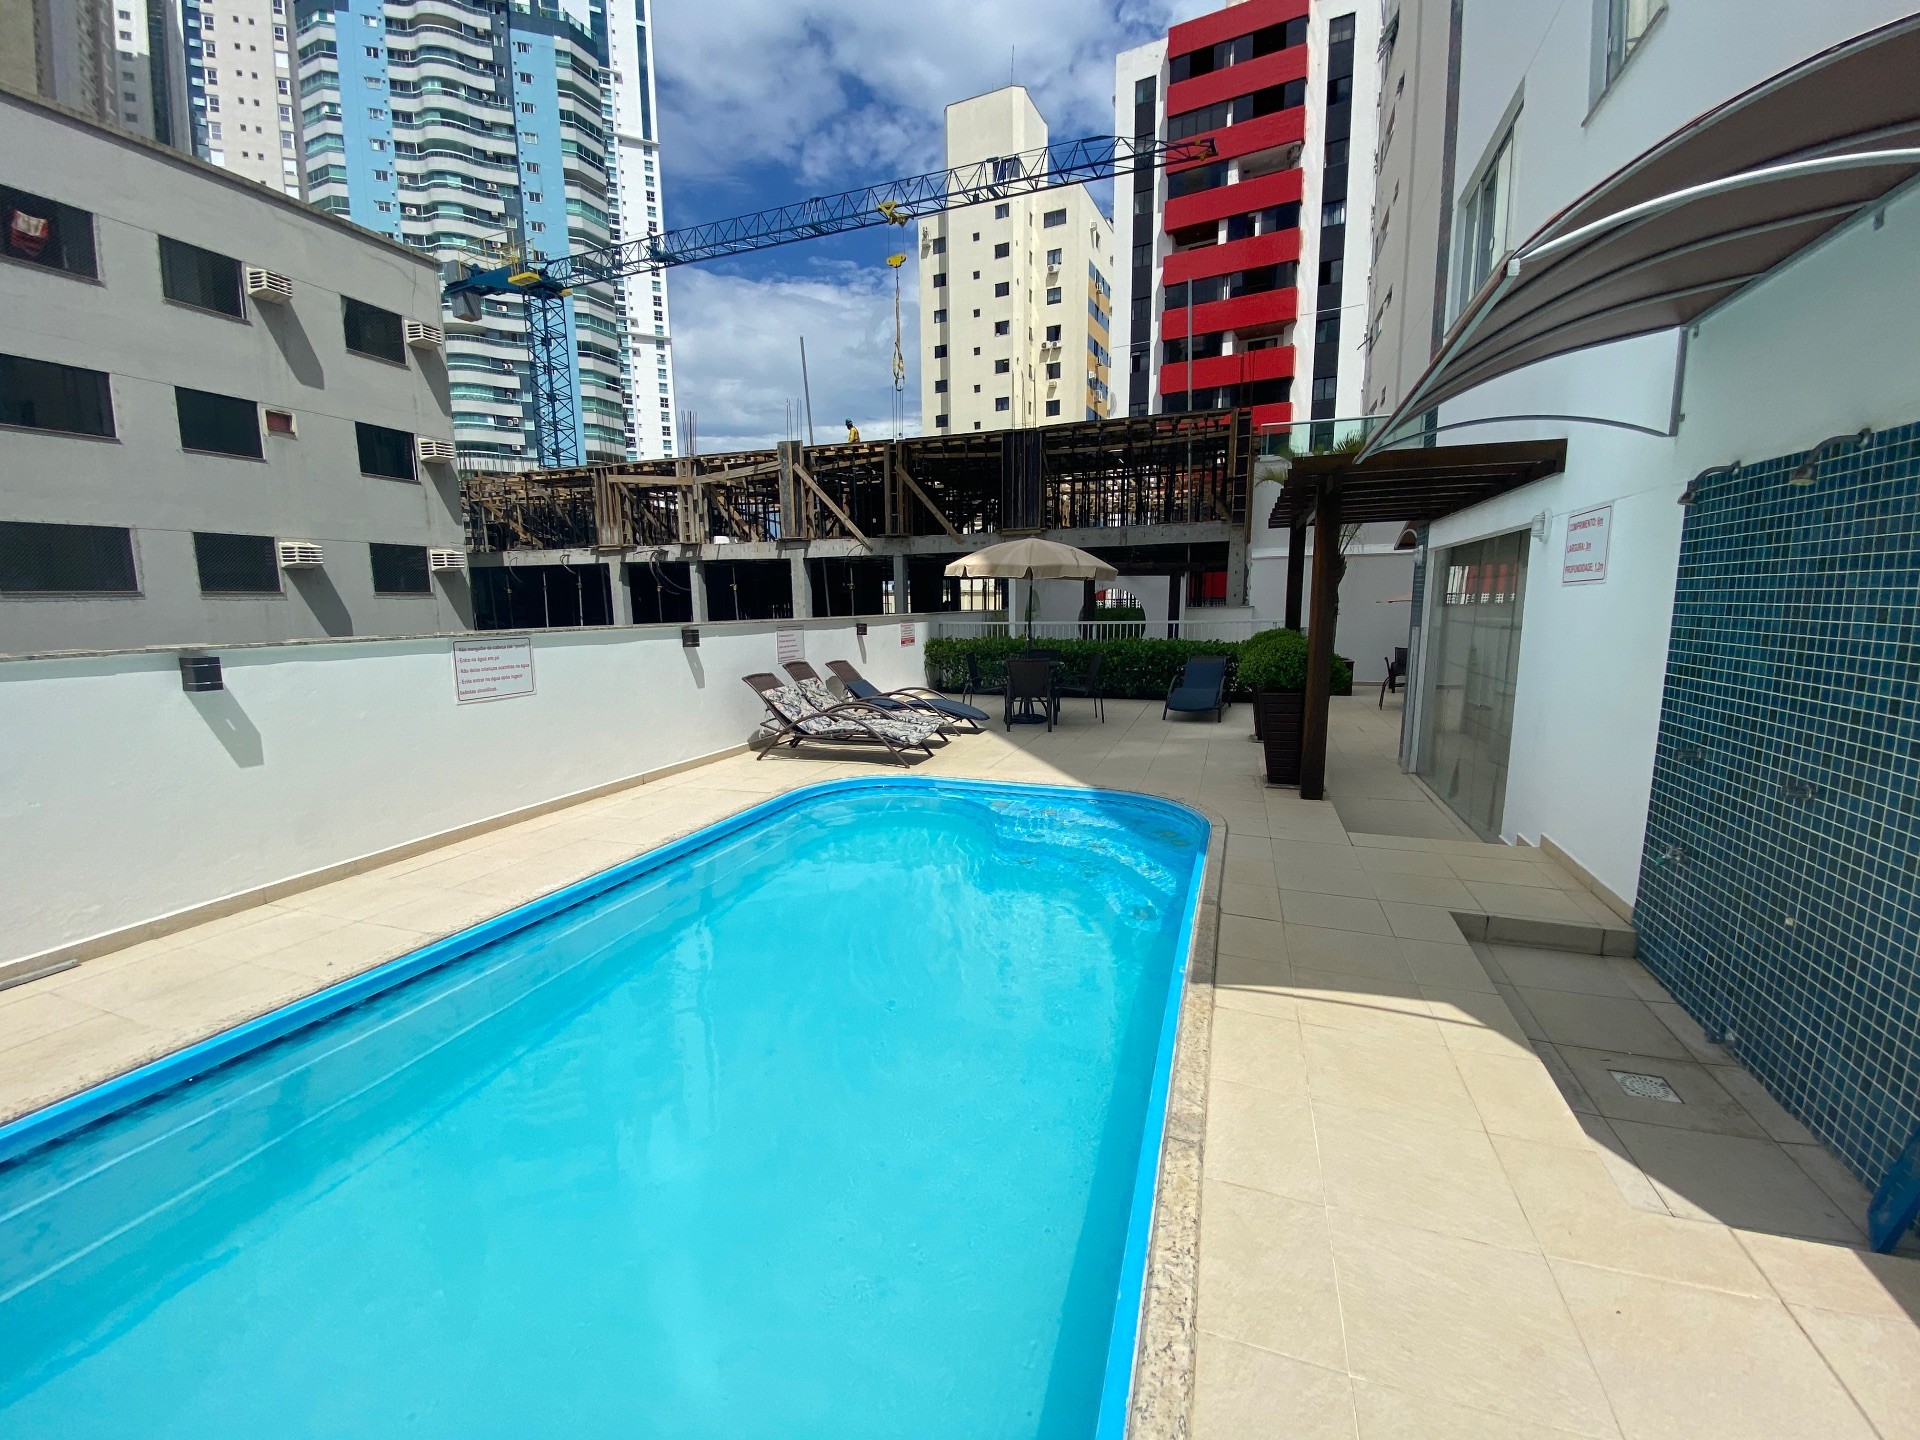 Apartamento Mobiliado, equipado e Decorado bem próximo ao mar, barra sul em Balneário Camboriú - SC 